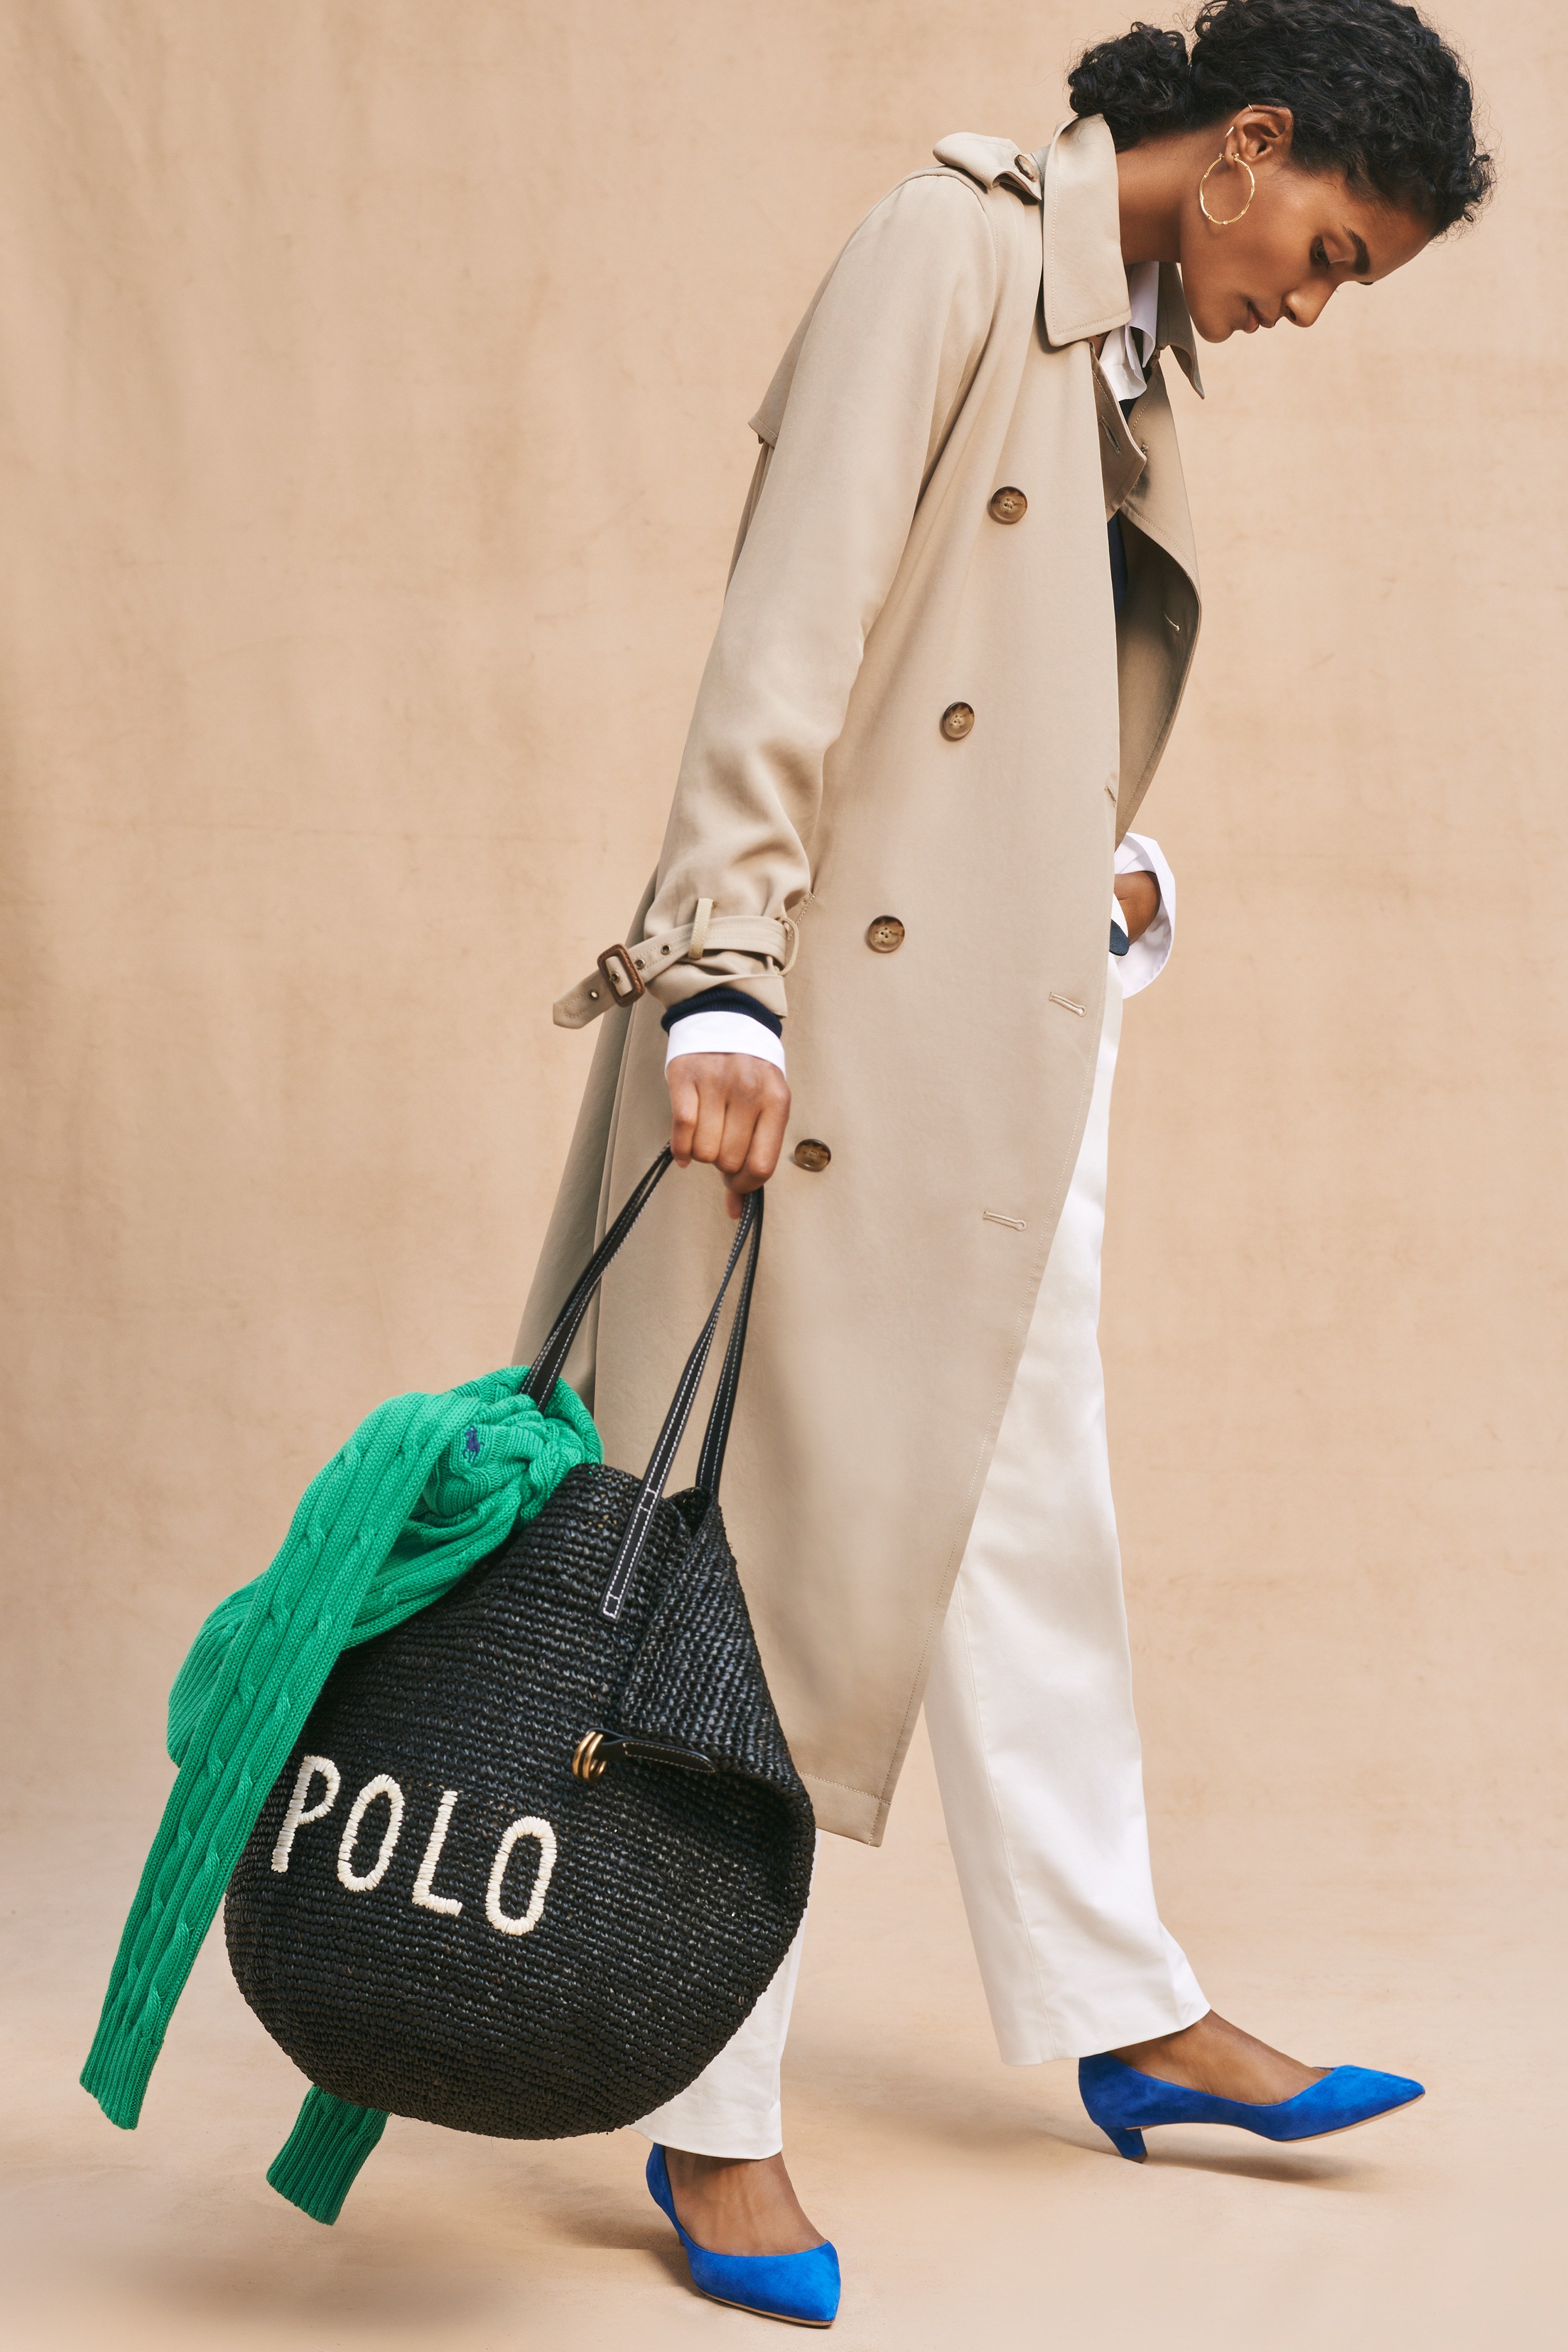 Polo Ralph Lauren Spring 2019 Lookbook